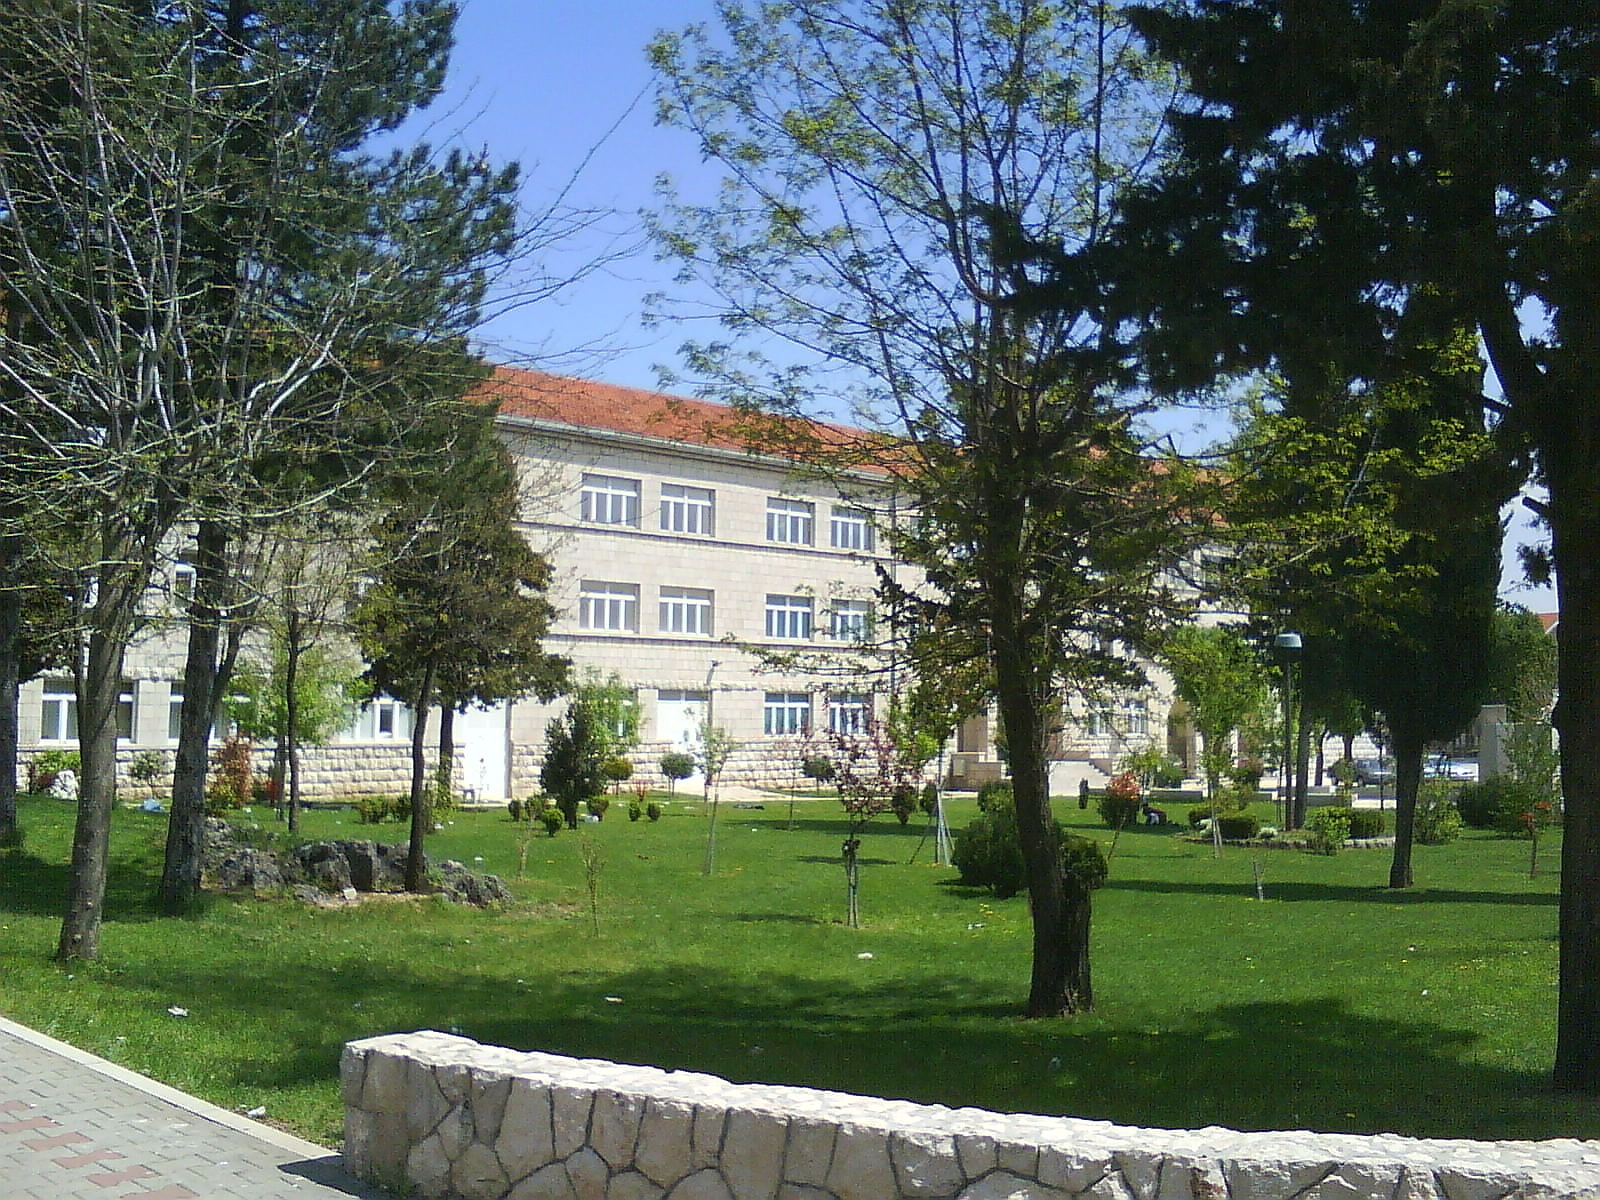 Posušje, Bosnia and Herzegovina